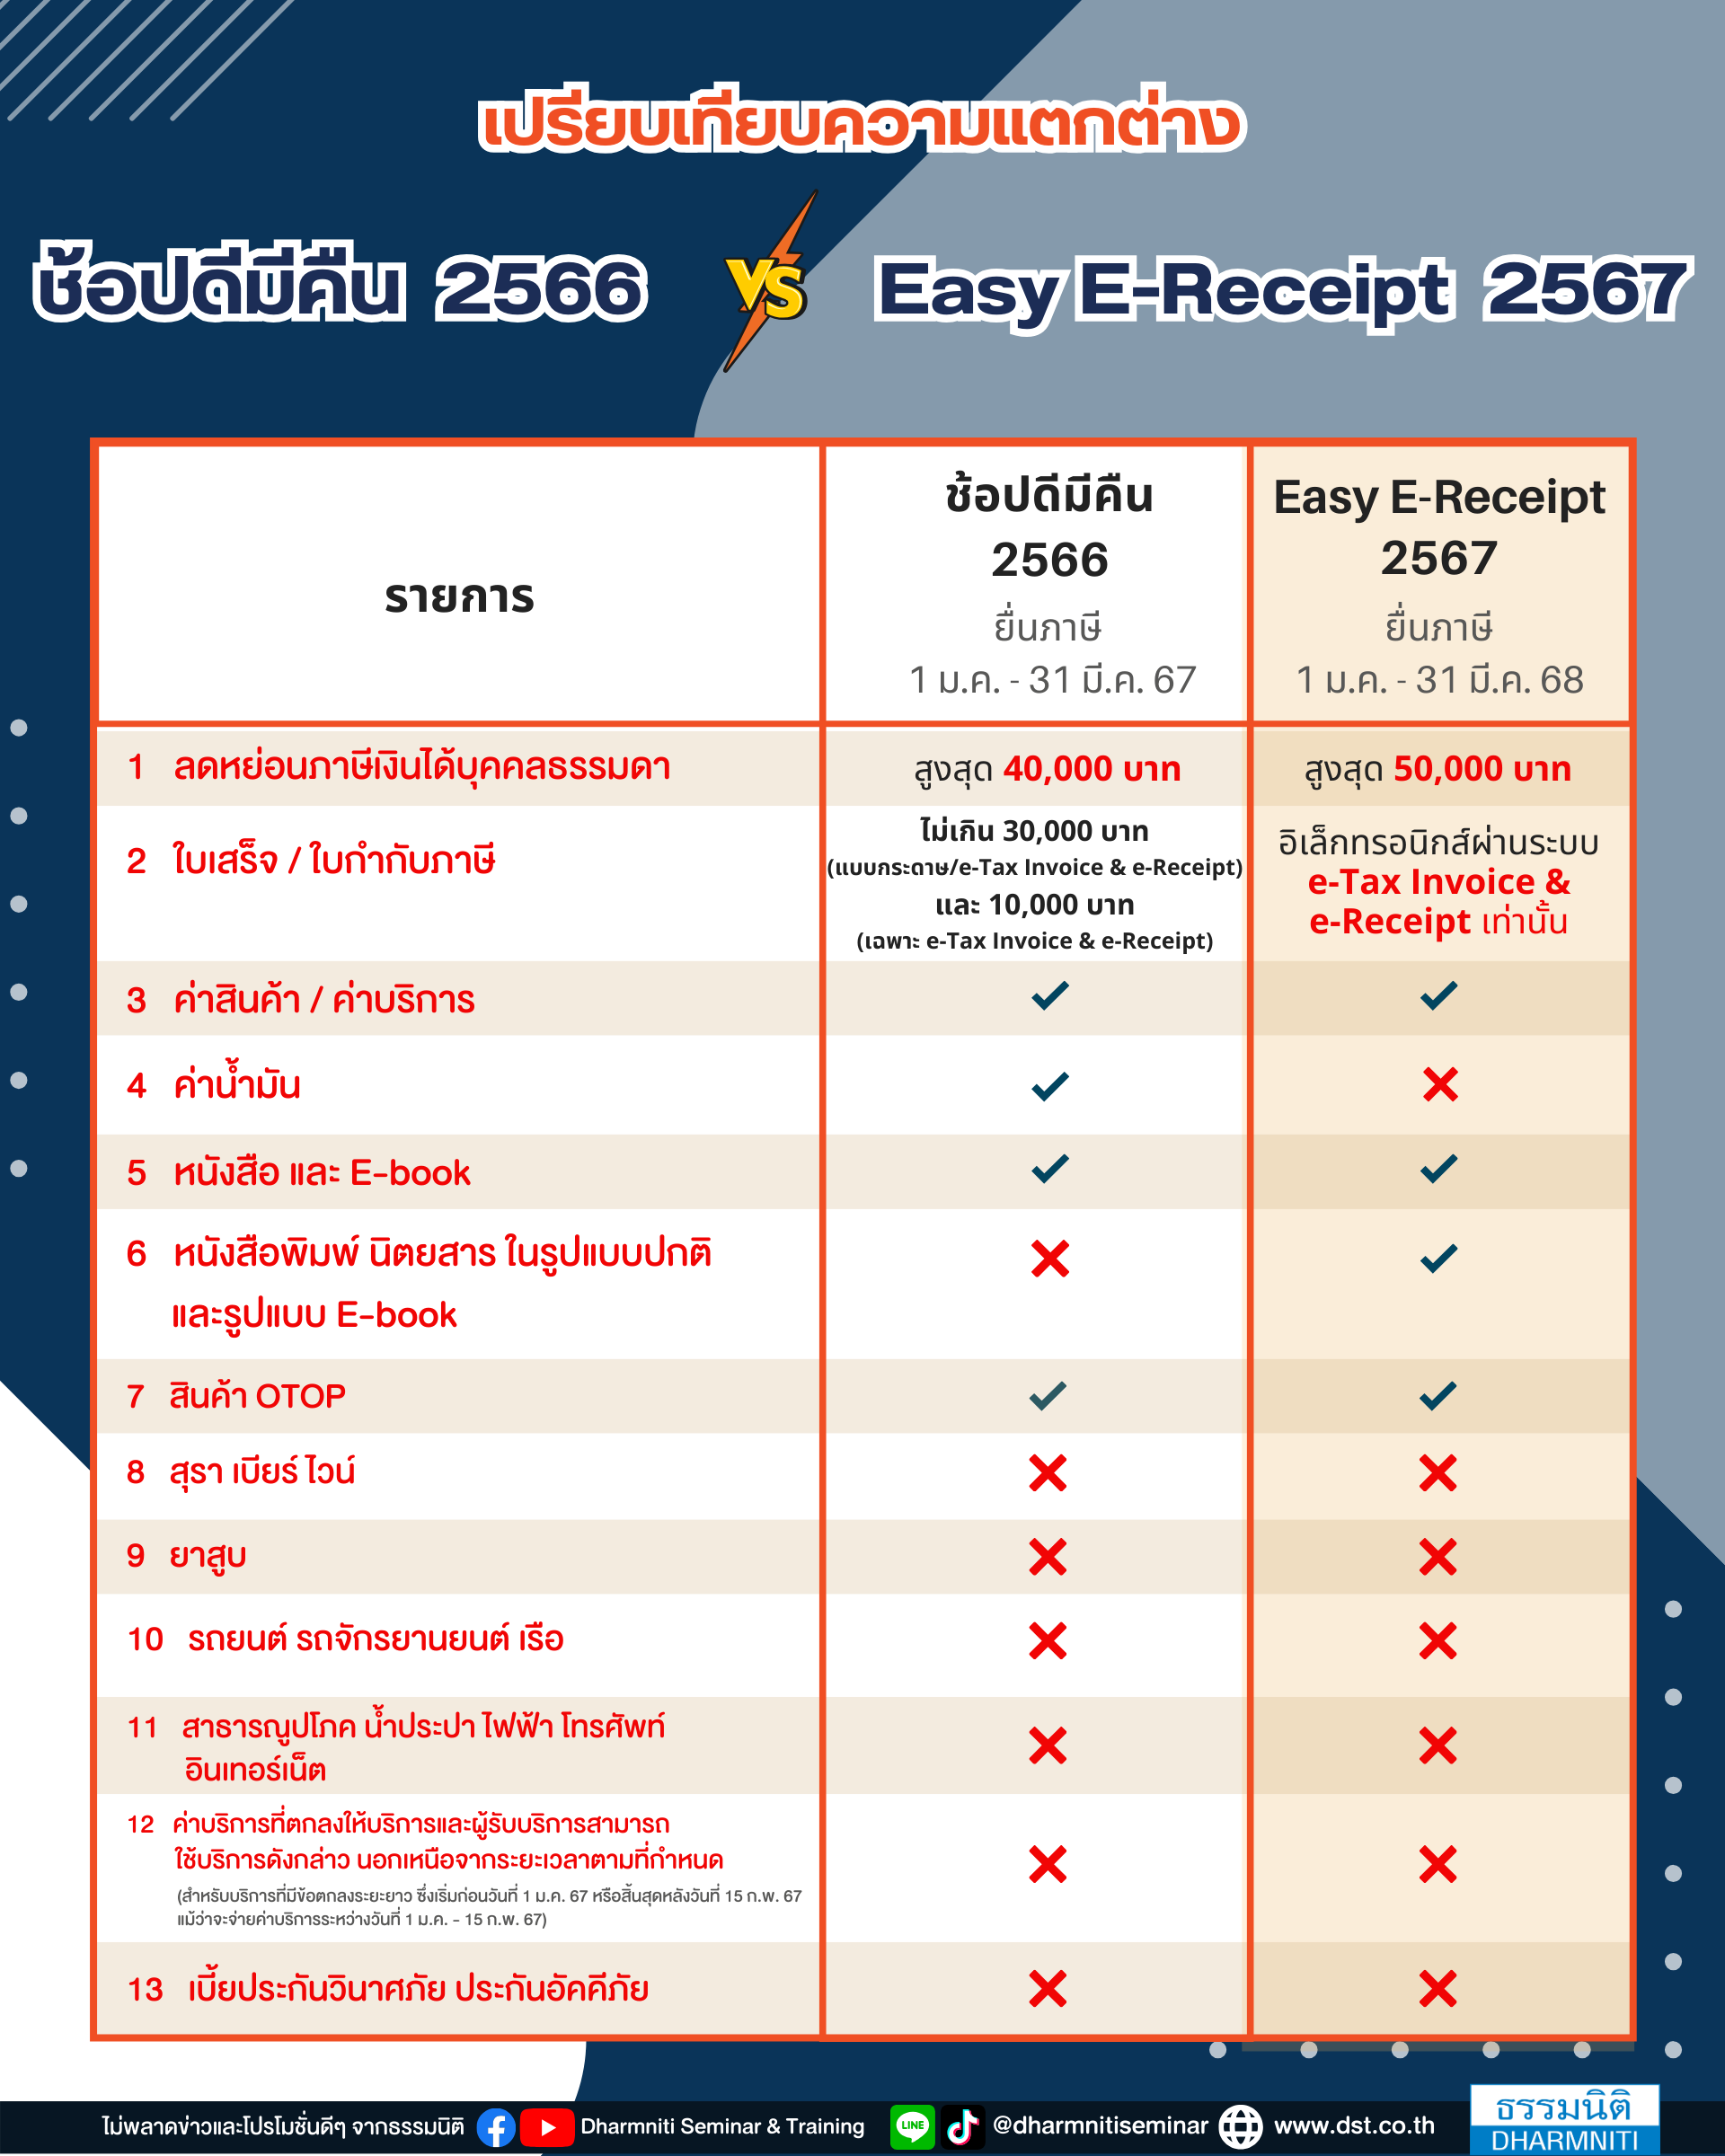 เปรียบเทียบความแตกต่าง ช้อปดีมีคืน 2566 vs easy e-receipt 2567